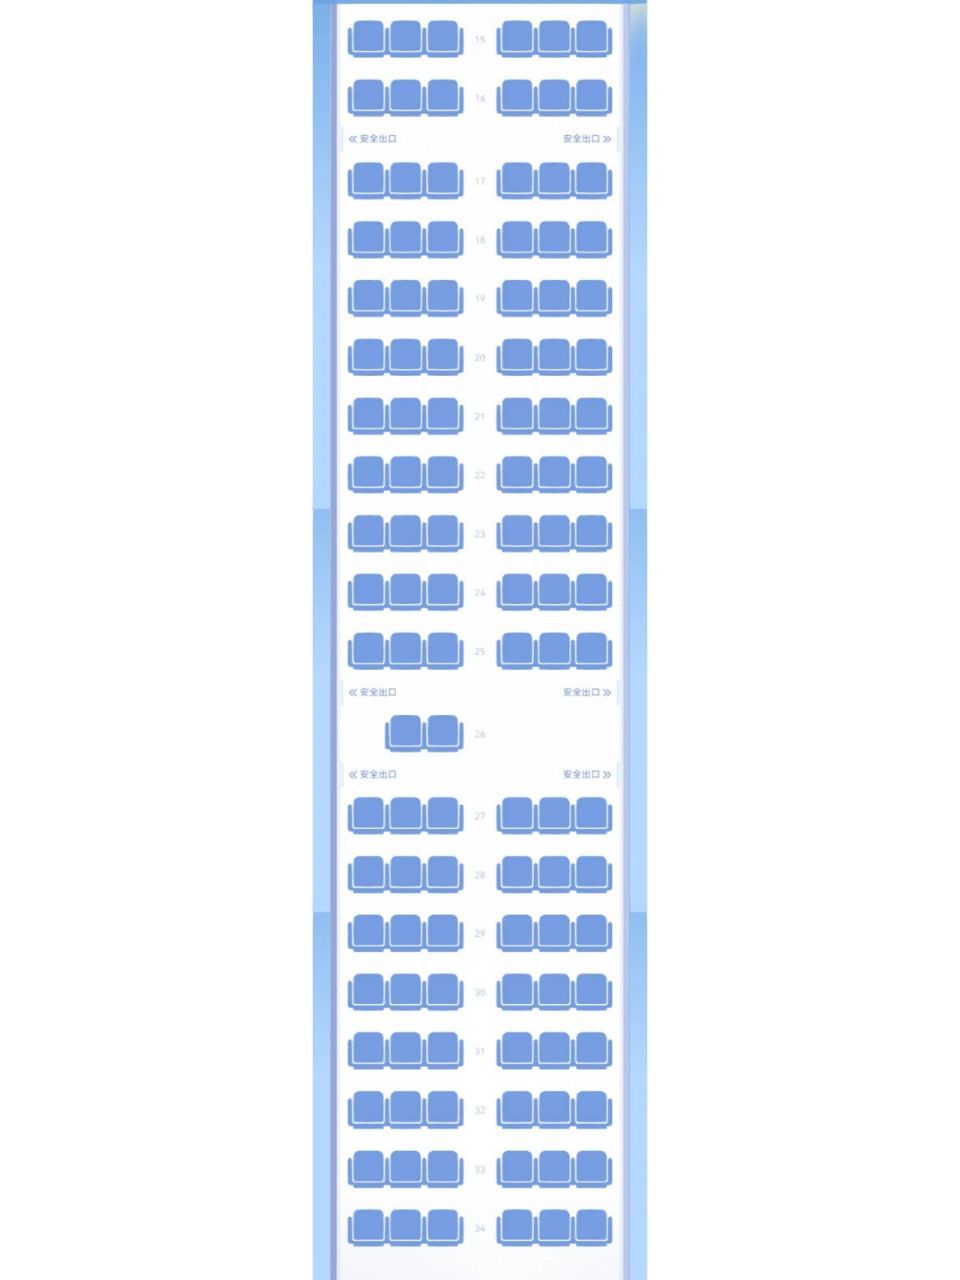 山航波音738(中)座位图图片